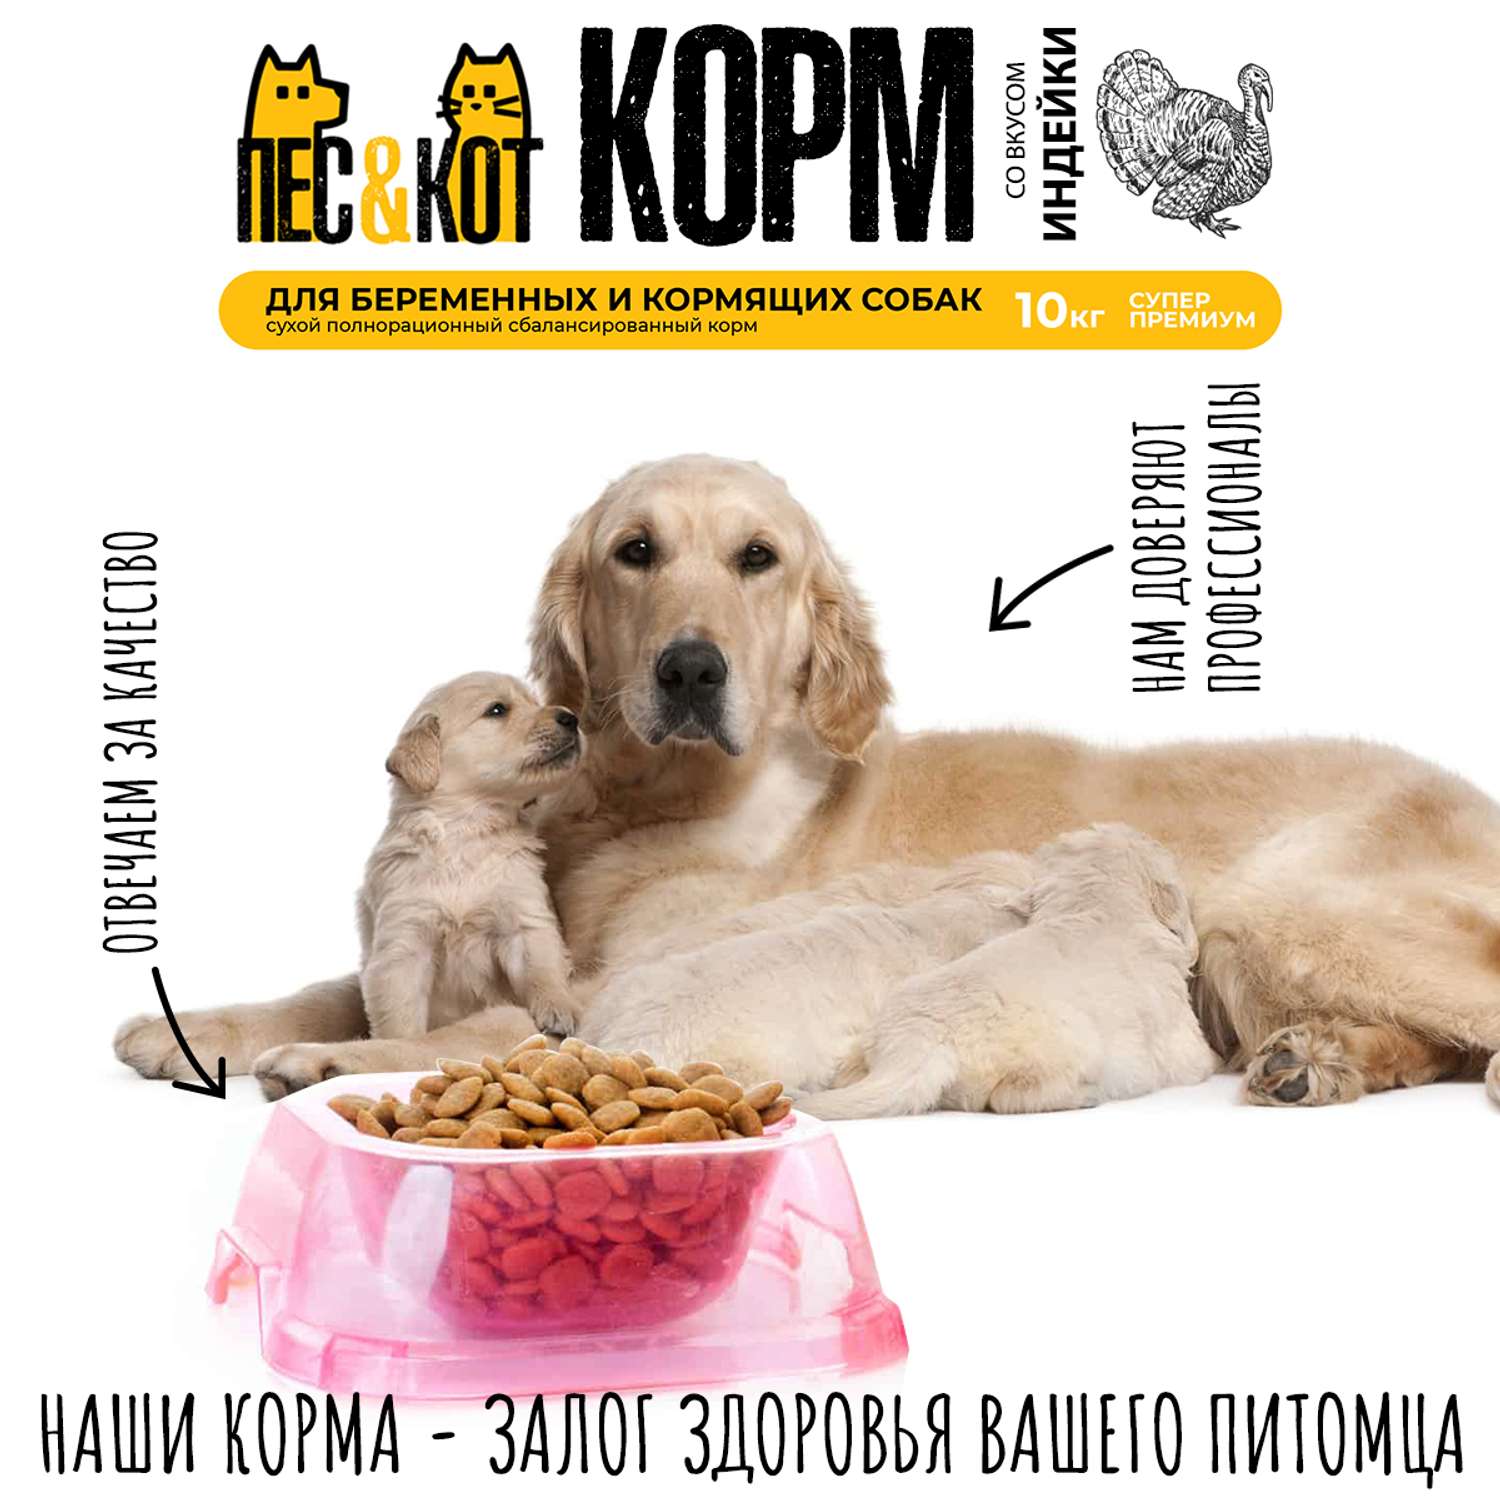 Корм сухой для собак ПЕС и КОТ Индейка 10 кг Суперпремиум для беременных кормящих сук крупных пород - фото 4